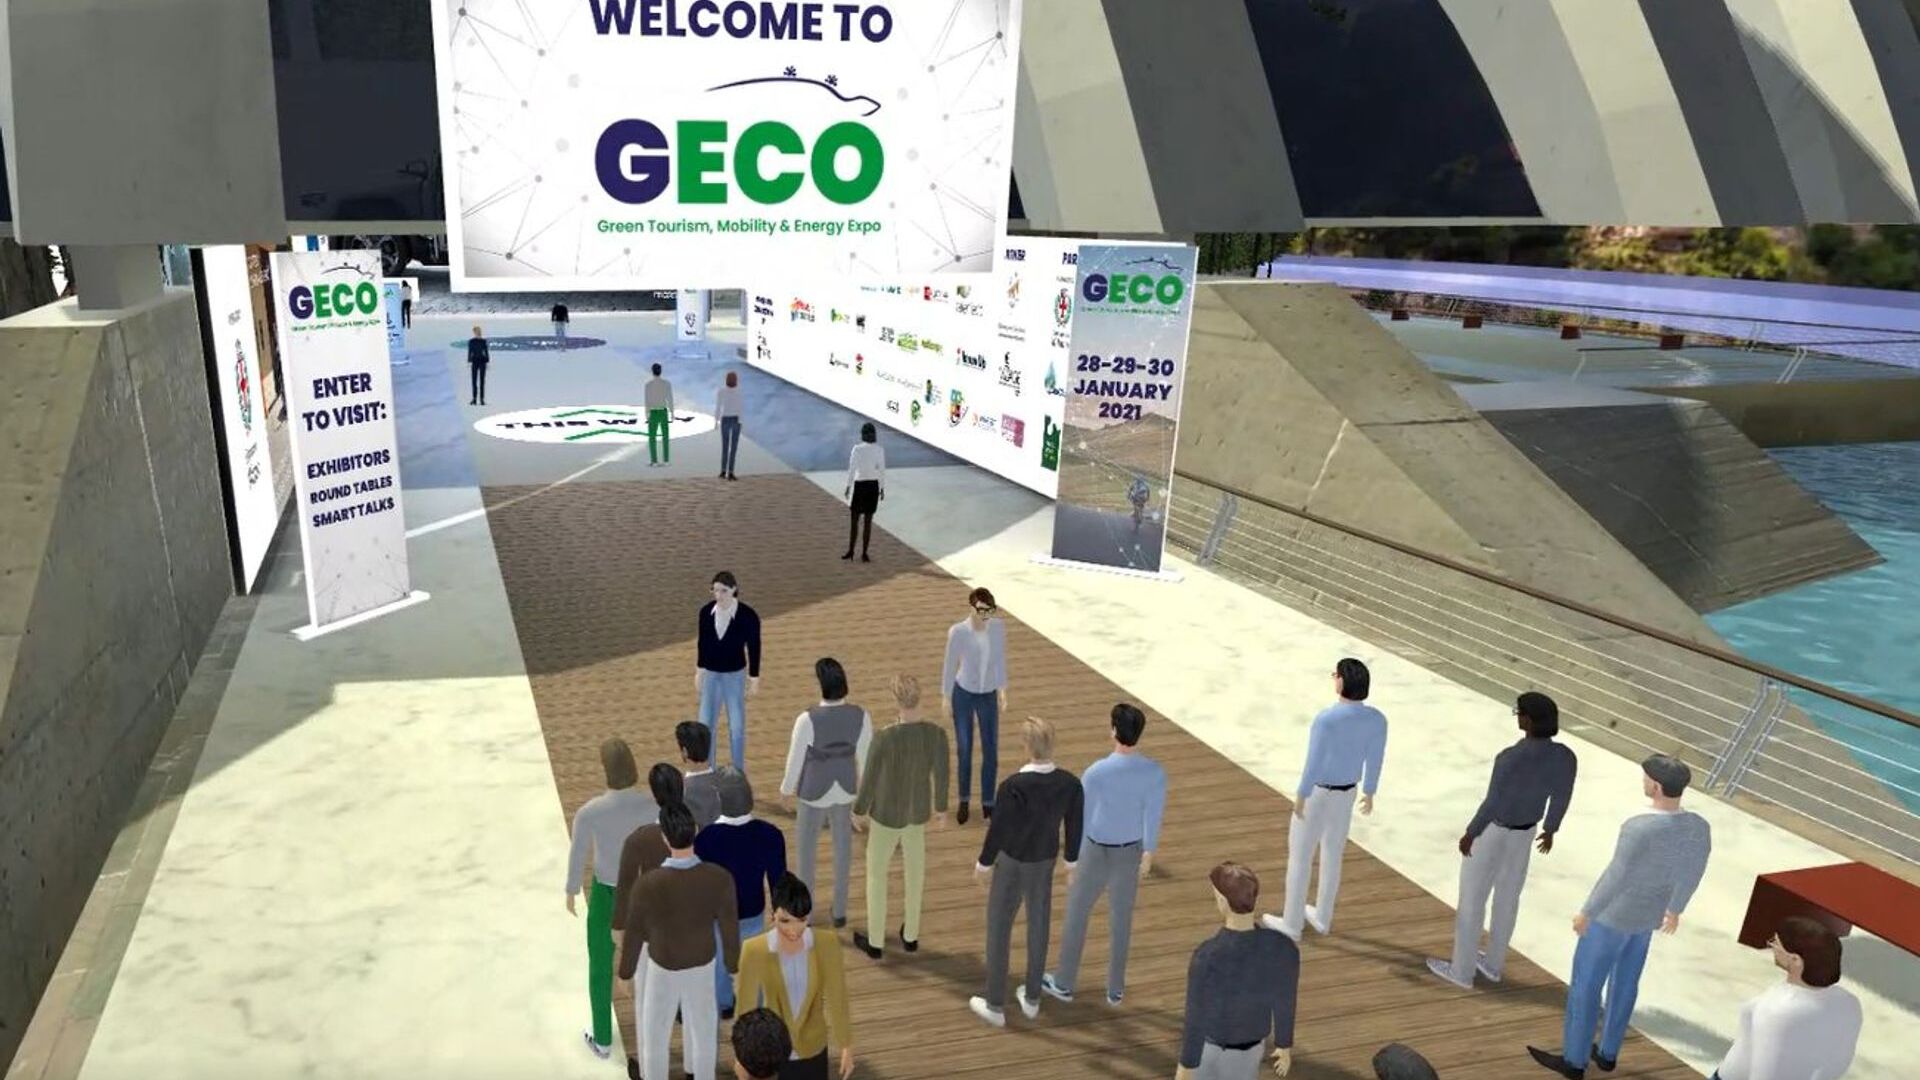 La prima edizione di 'GECO Expo' si è svolta dal 29 al 30 gennaio 2021